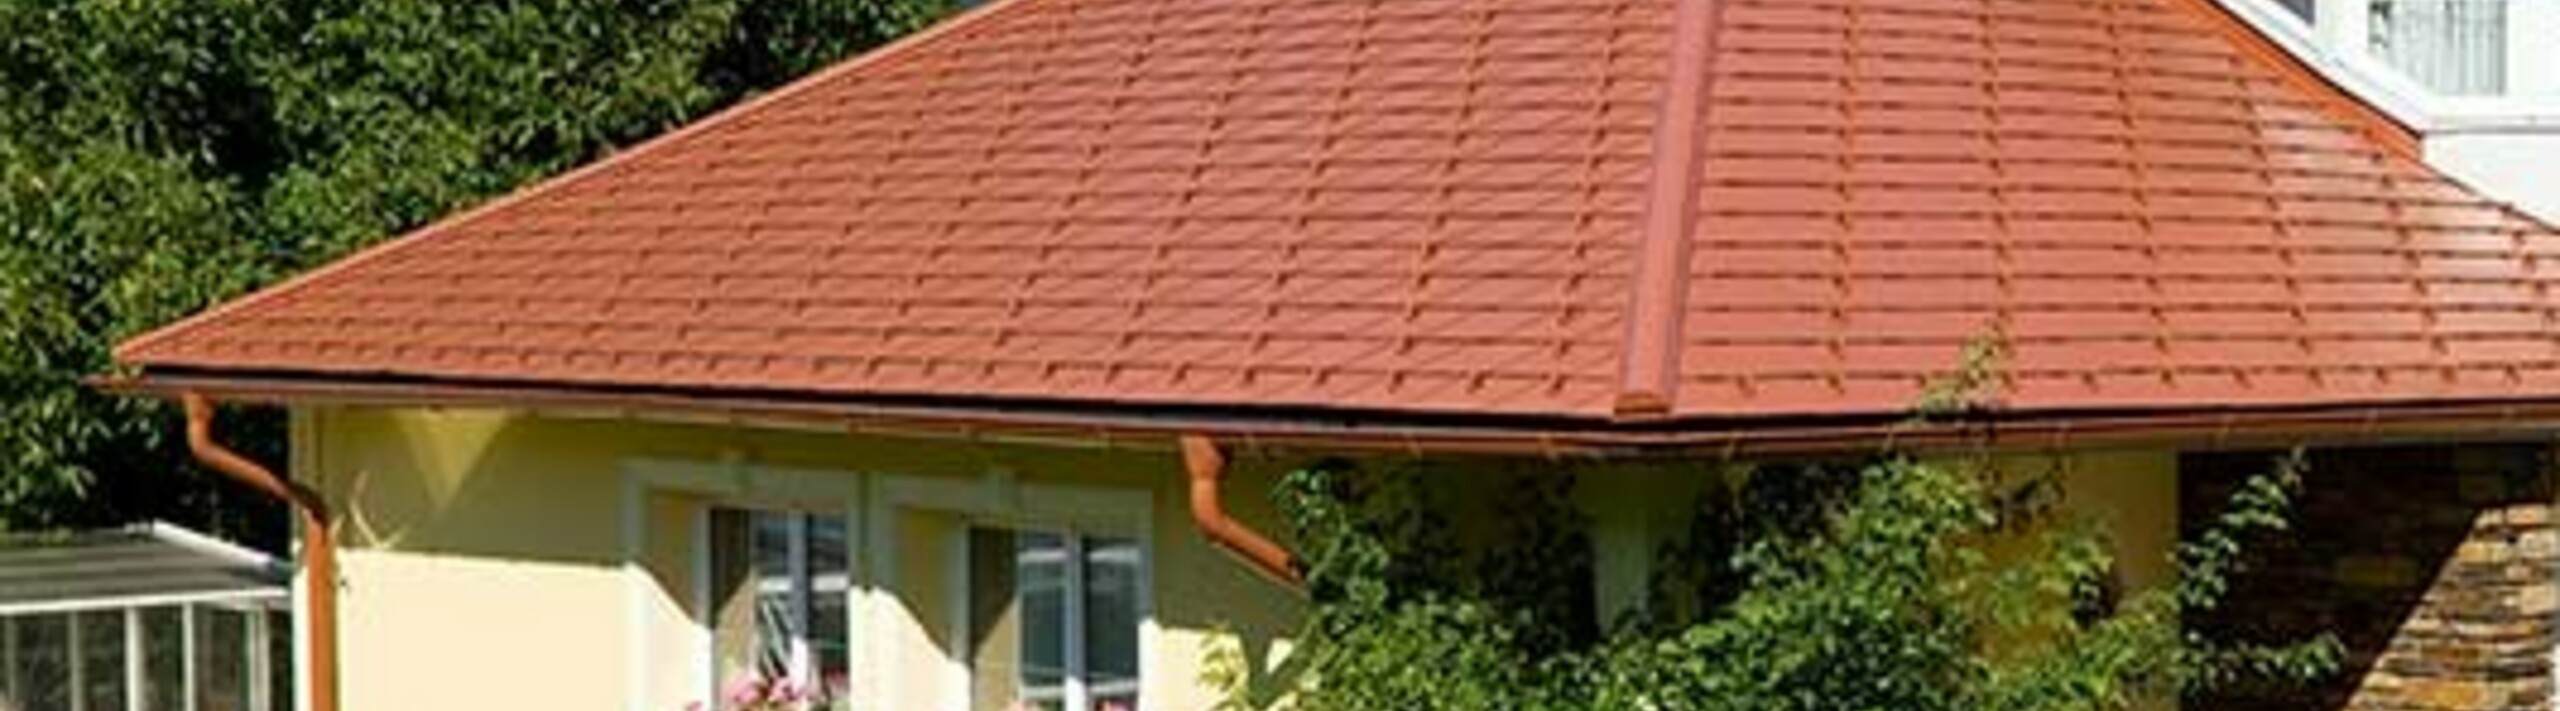 Obiteljska kuća s četverostrešnim krovom i krovnom kućicom pokrivena PREFA aluminijskom šindrom u optici crijepa, ciglasto crvenom.